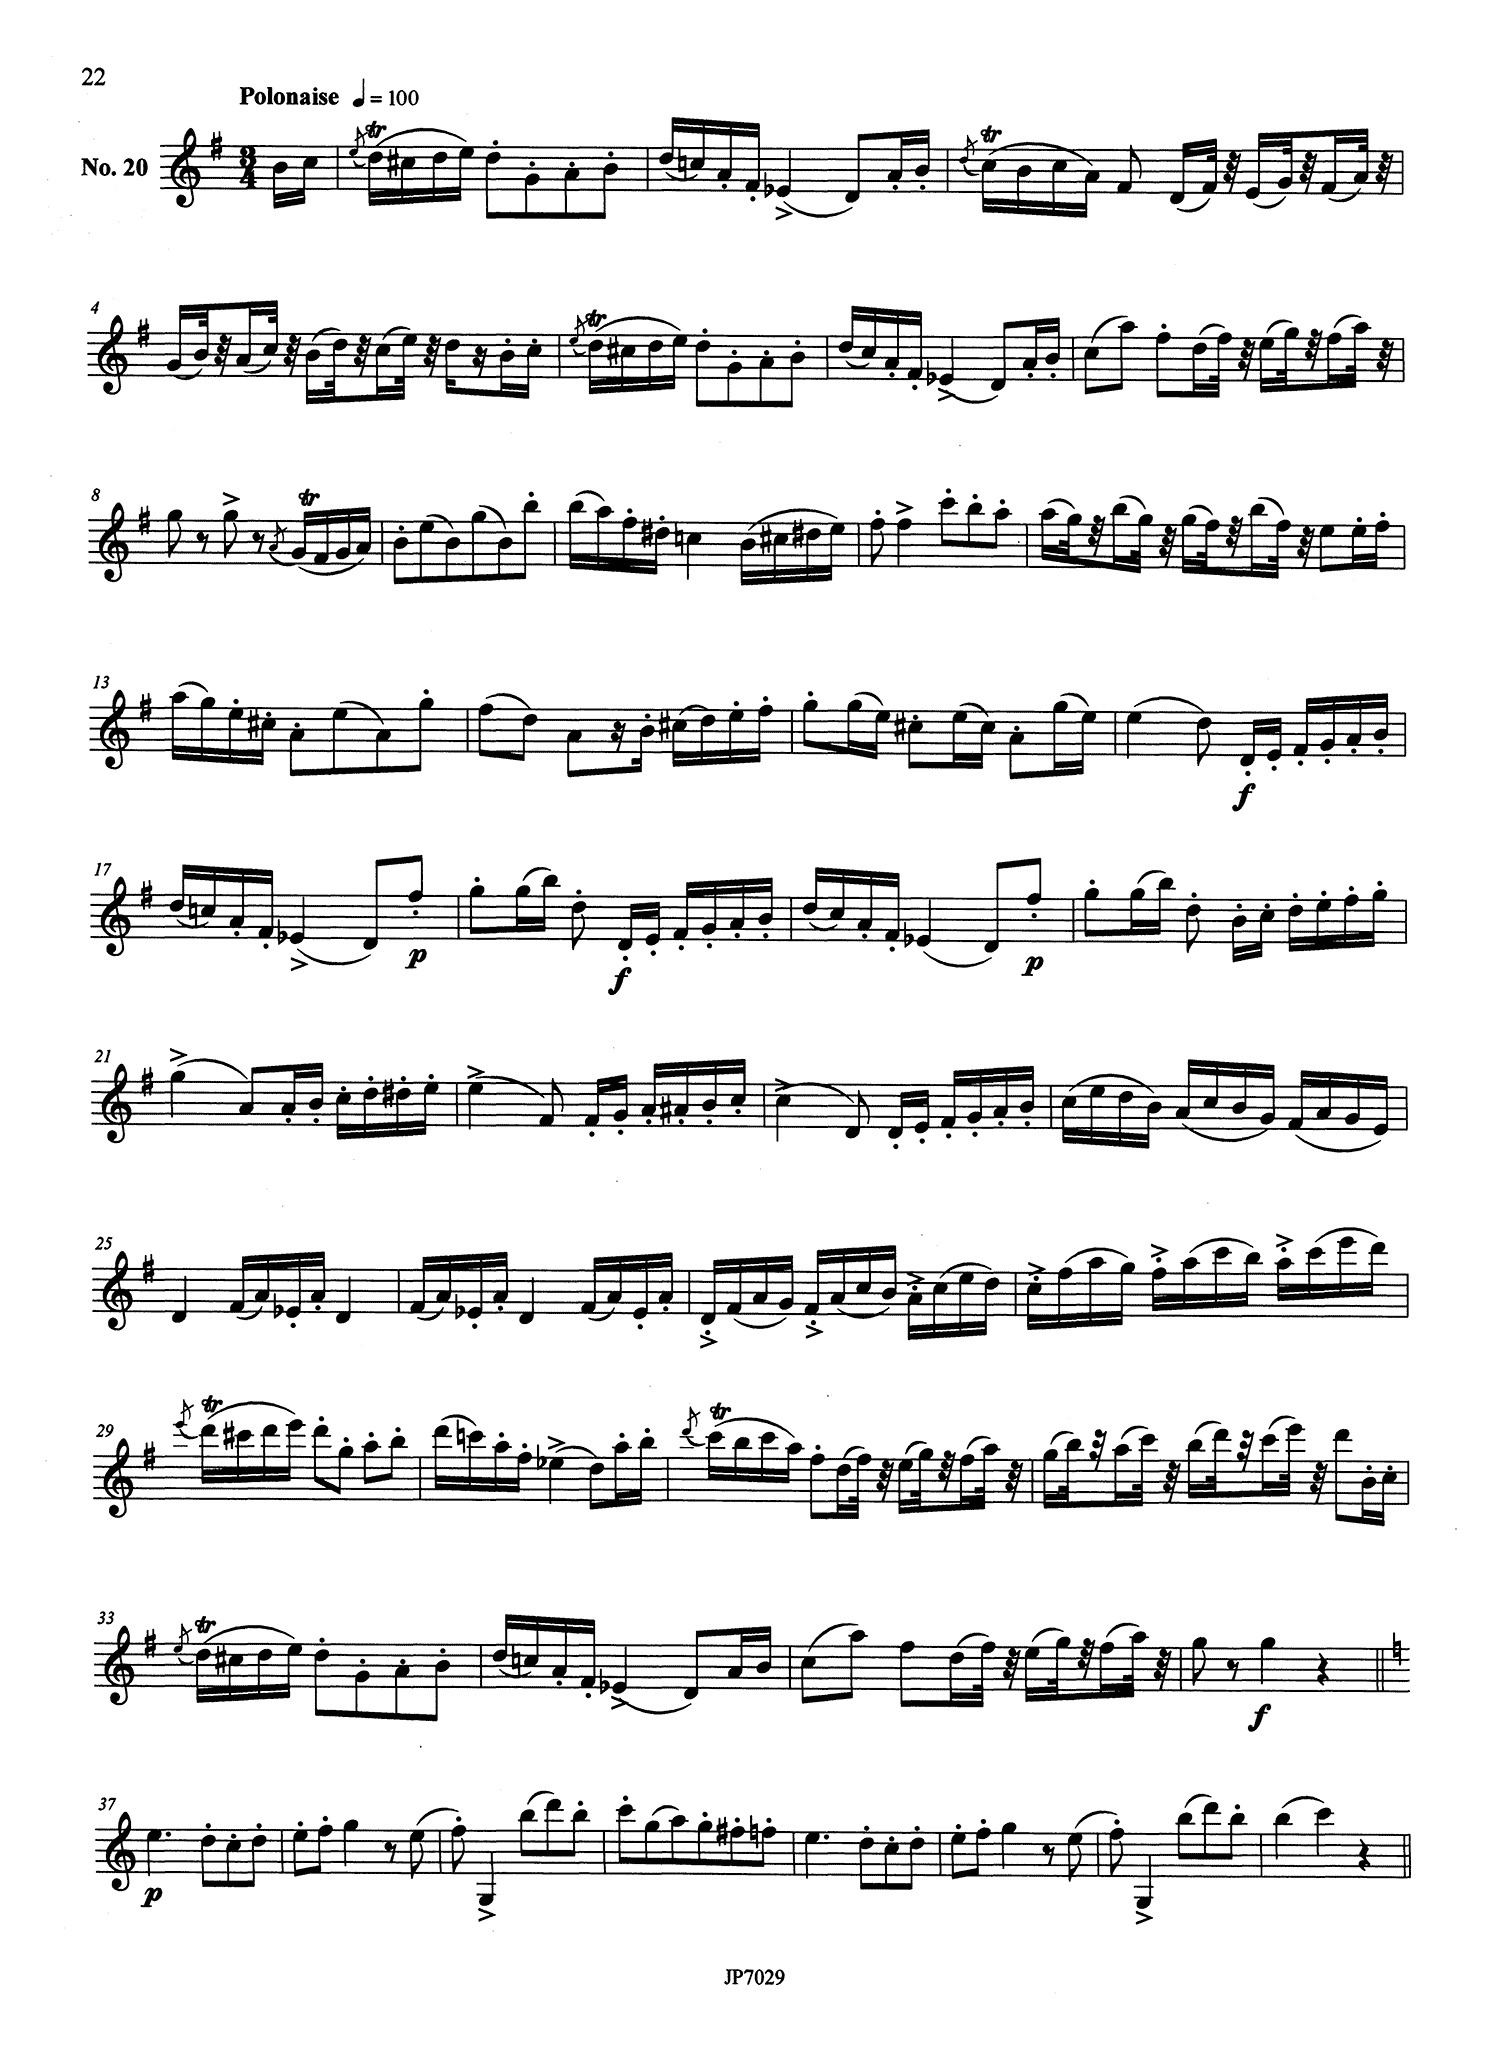 Rose 40 Clarinet Études Page 22